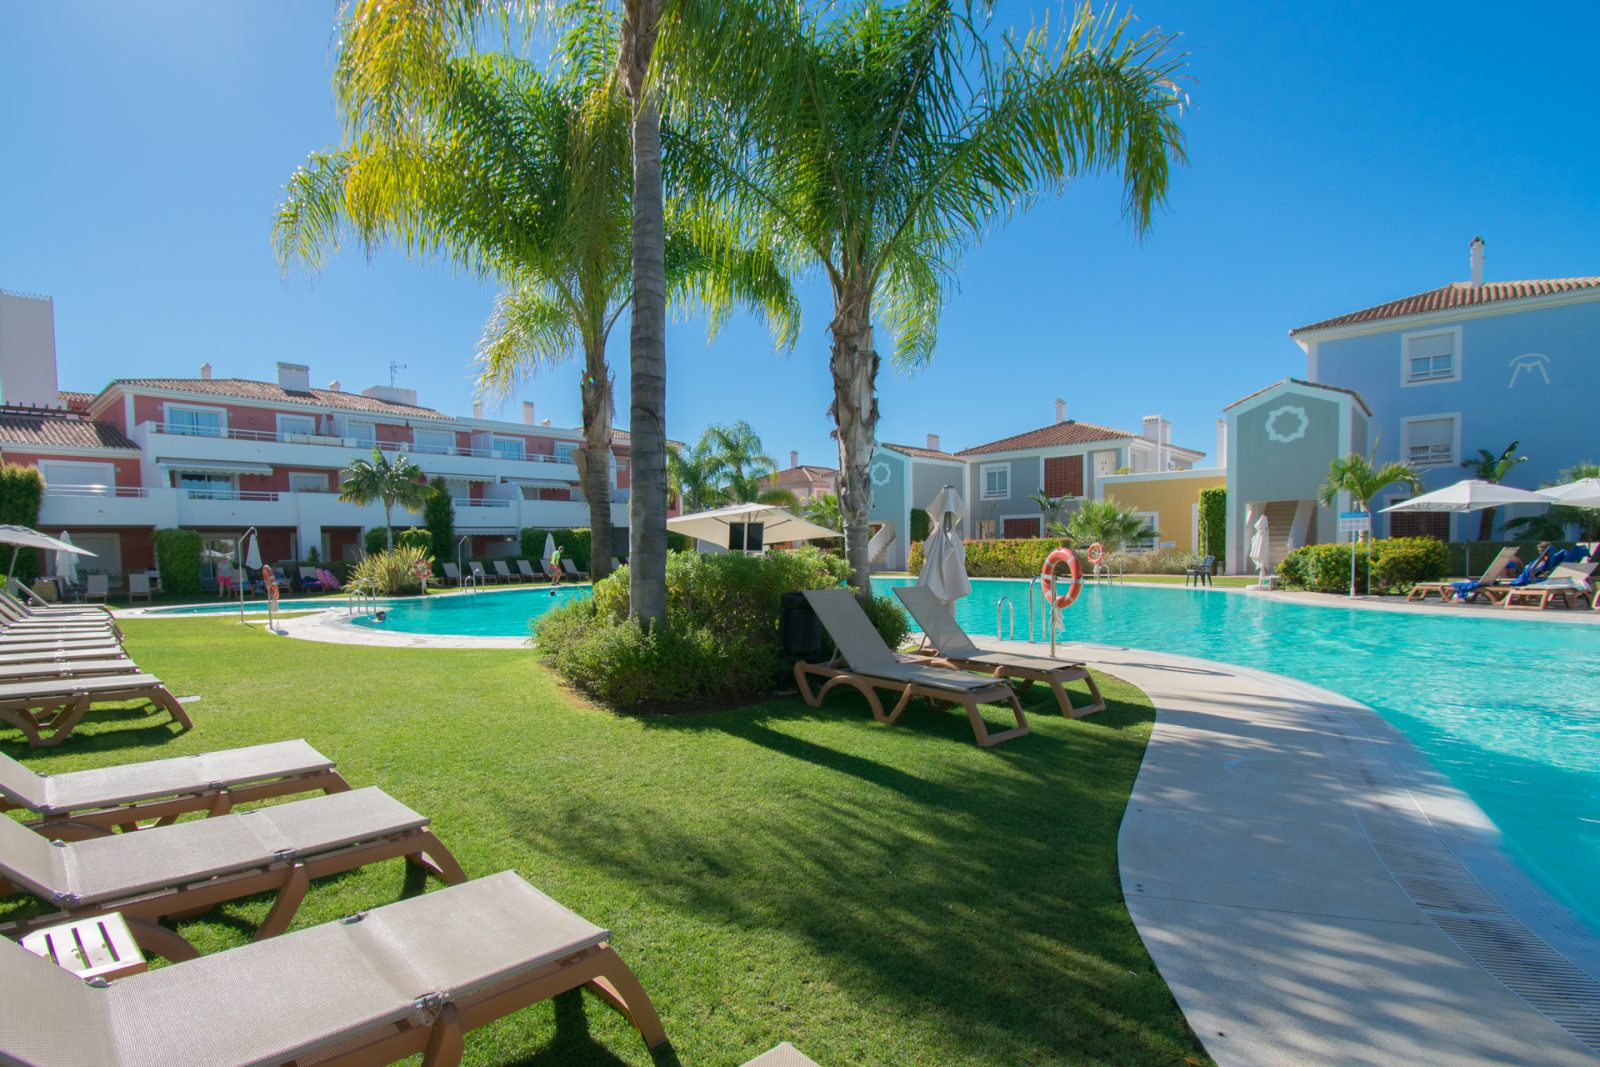 pool och palm, ett härligt ställe att spendera på semesterledighet